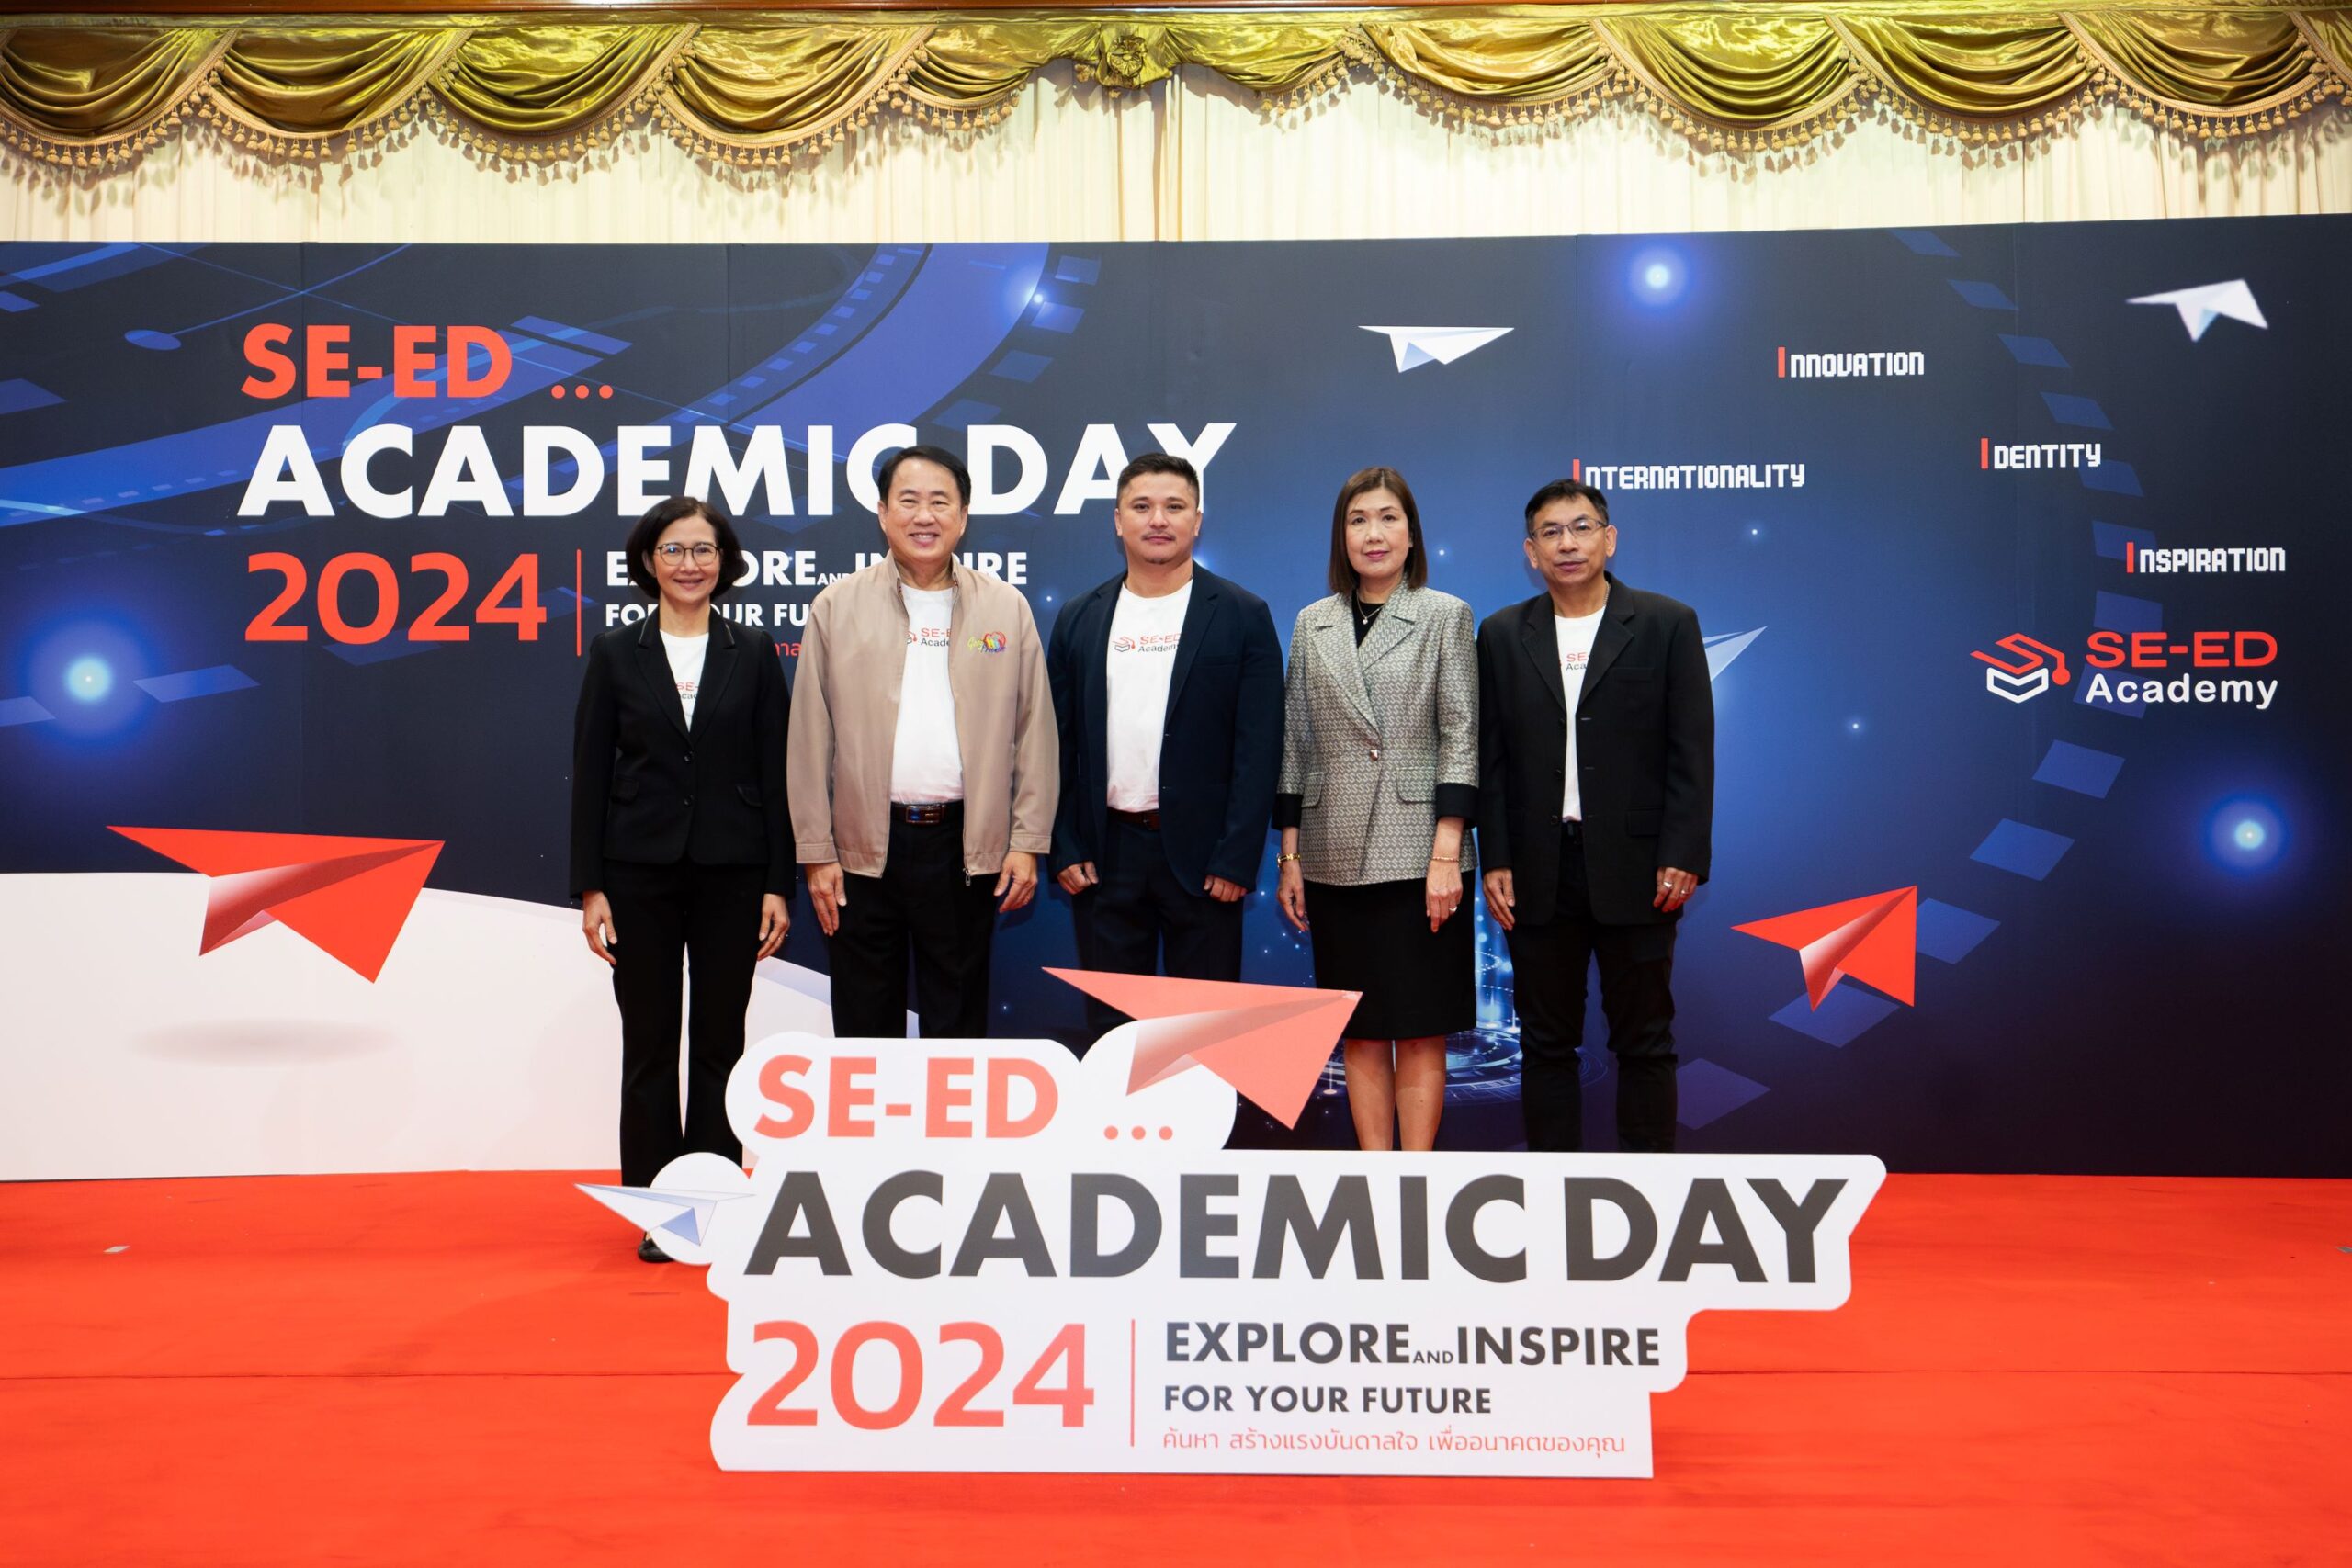 ซีเอ็ด จัดสัมมนาวิชาการ มุ่งยกระดับการศึกษาไทยสู่อนาคต  ในงาน “SE-ED ACADEMIC DAY 2024”